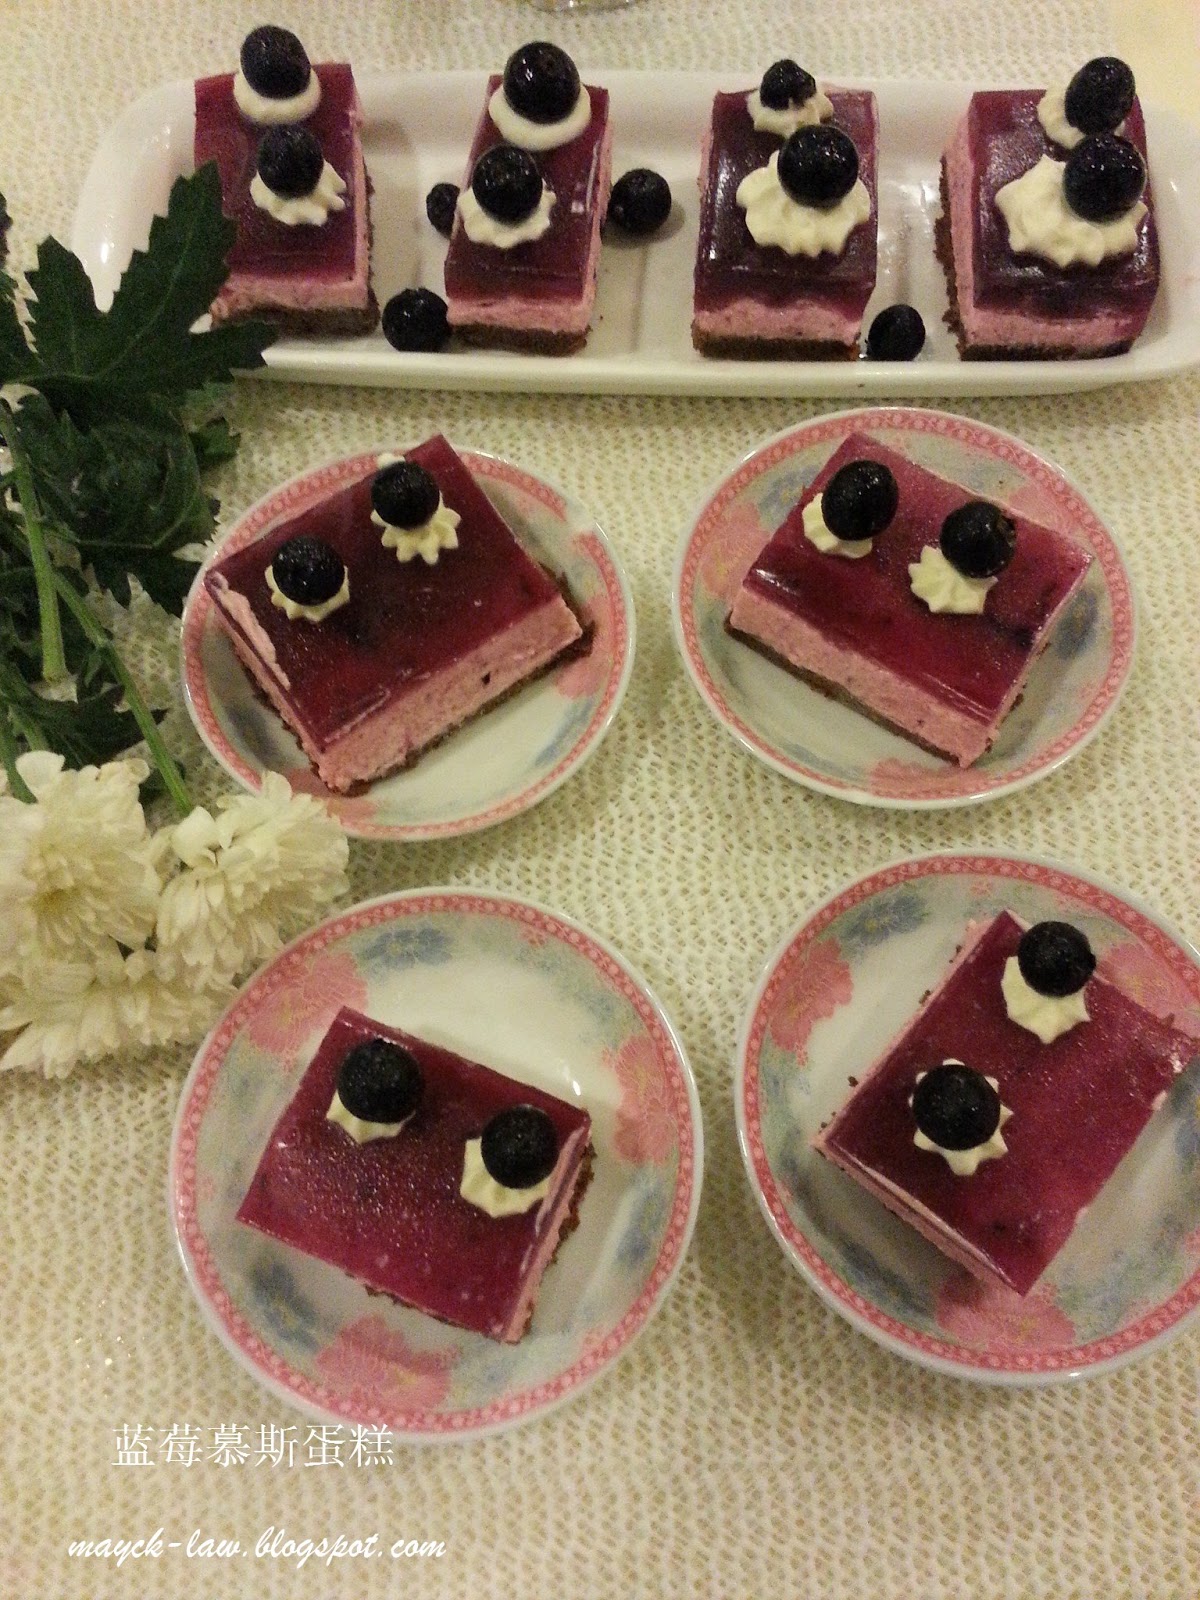 厨苑食谱: 蓝莓慕斯蛋糕 Blueberry Mousse Cake